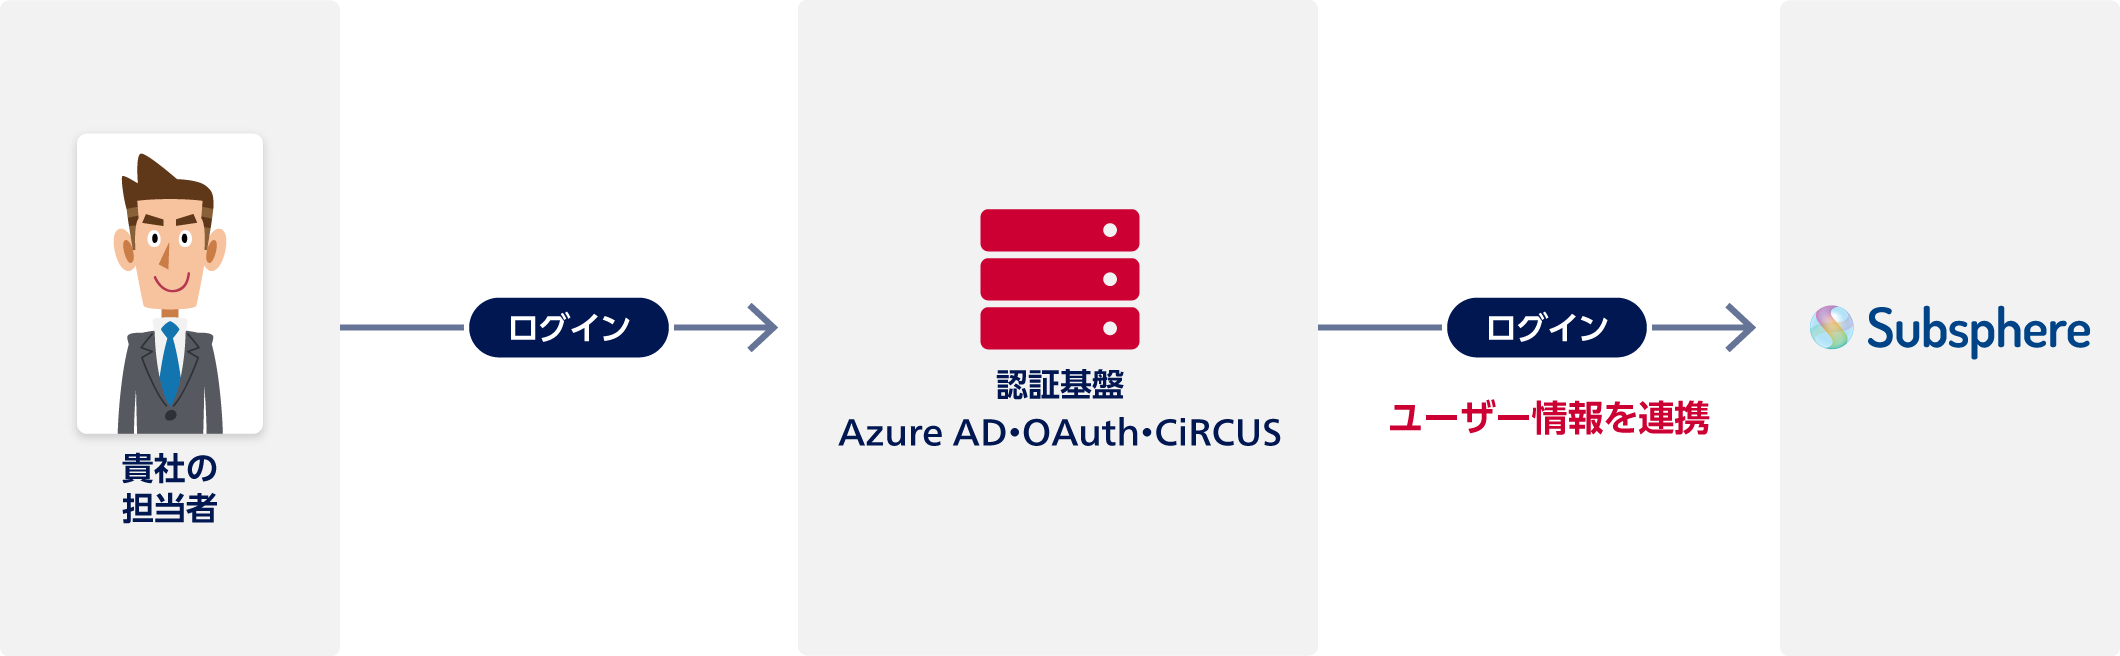 貴社の担当者は認証基盤（Azure AD・OAuth・CiRCUS）にログイン。認証基盤からSubsphere（サブスフィア）にユーザー情報を連携してログイン。